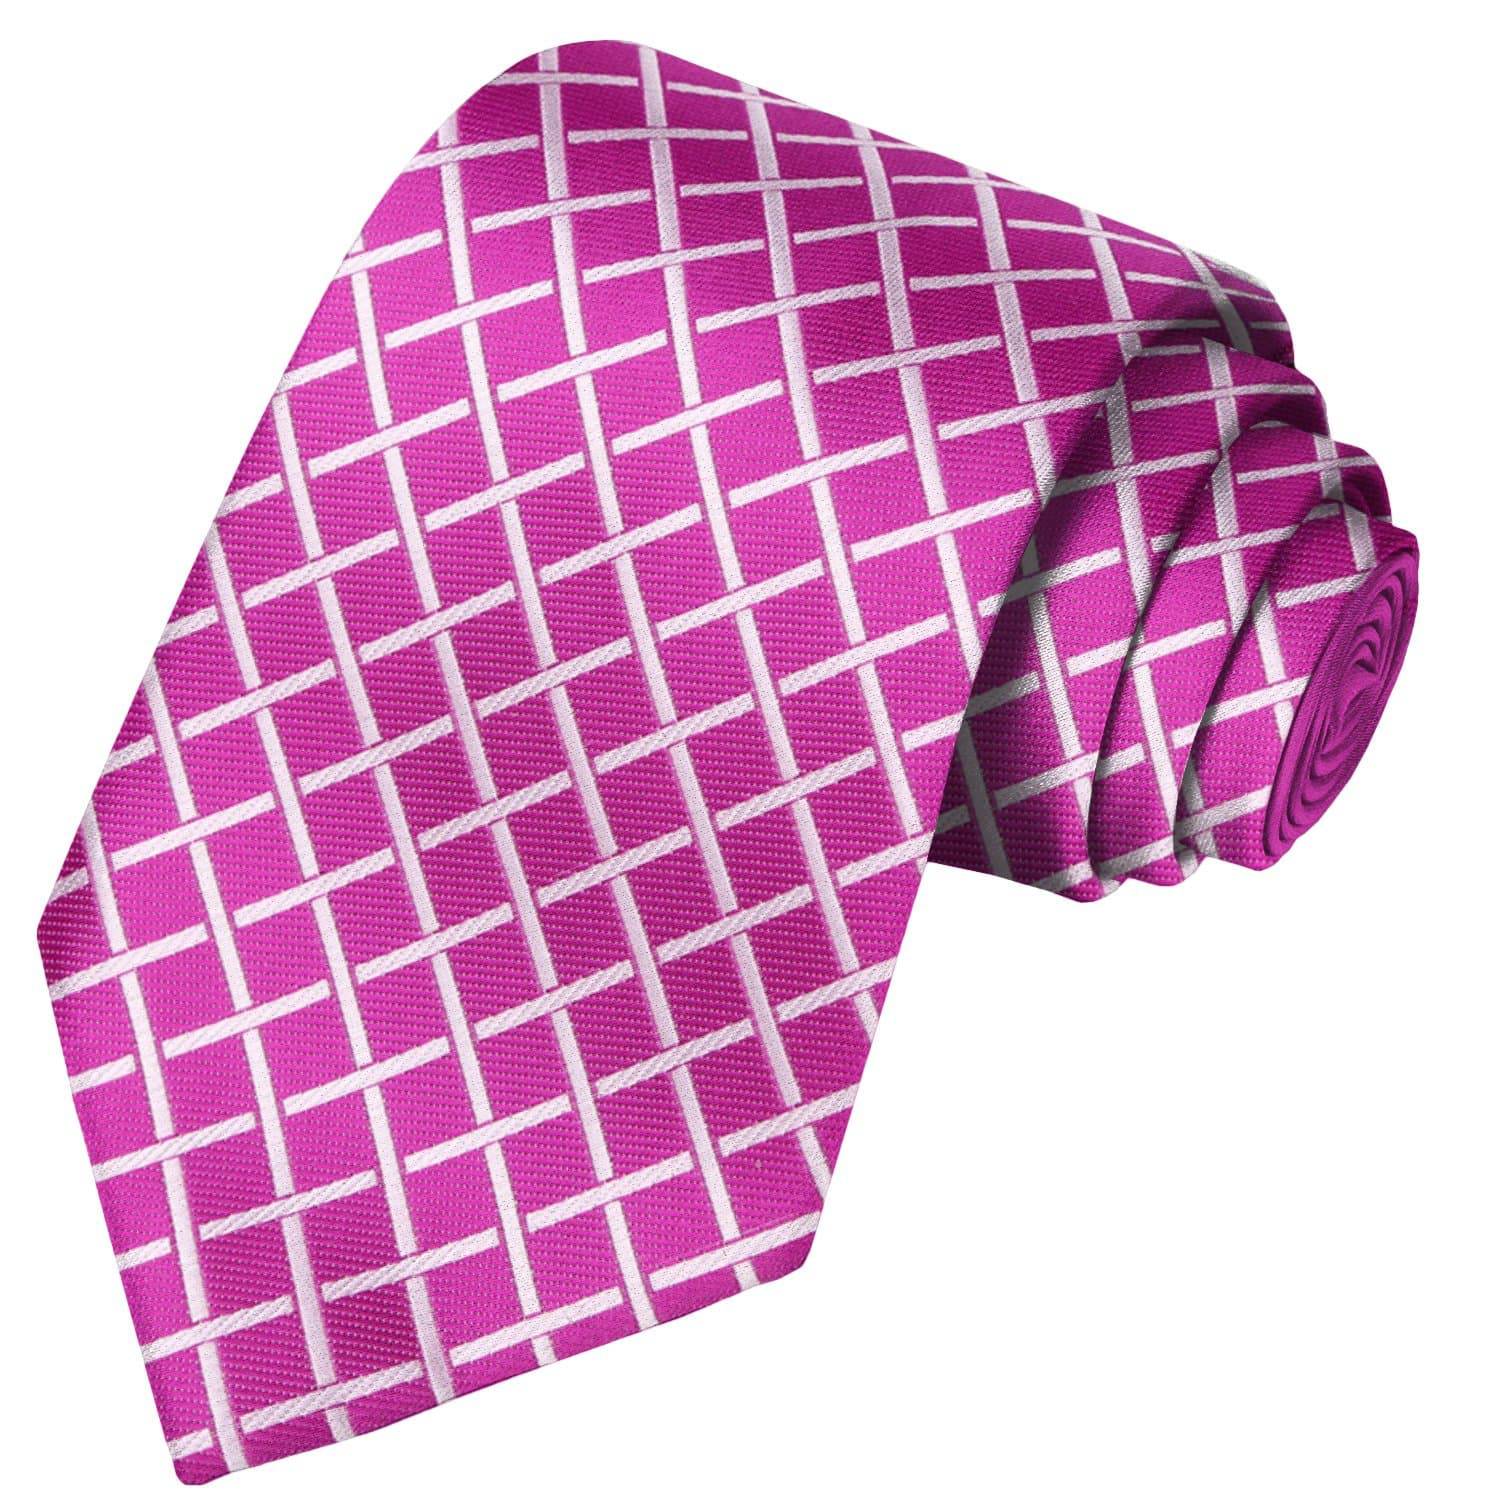 Fuchsia-White Checkered Tie - Tie, bowtie, pocket square  | Kissties